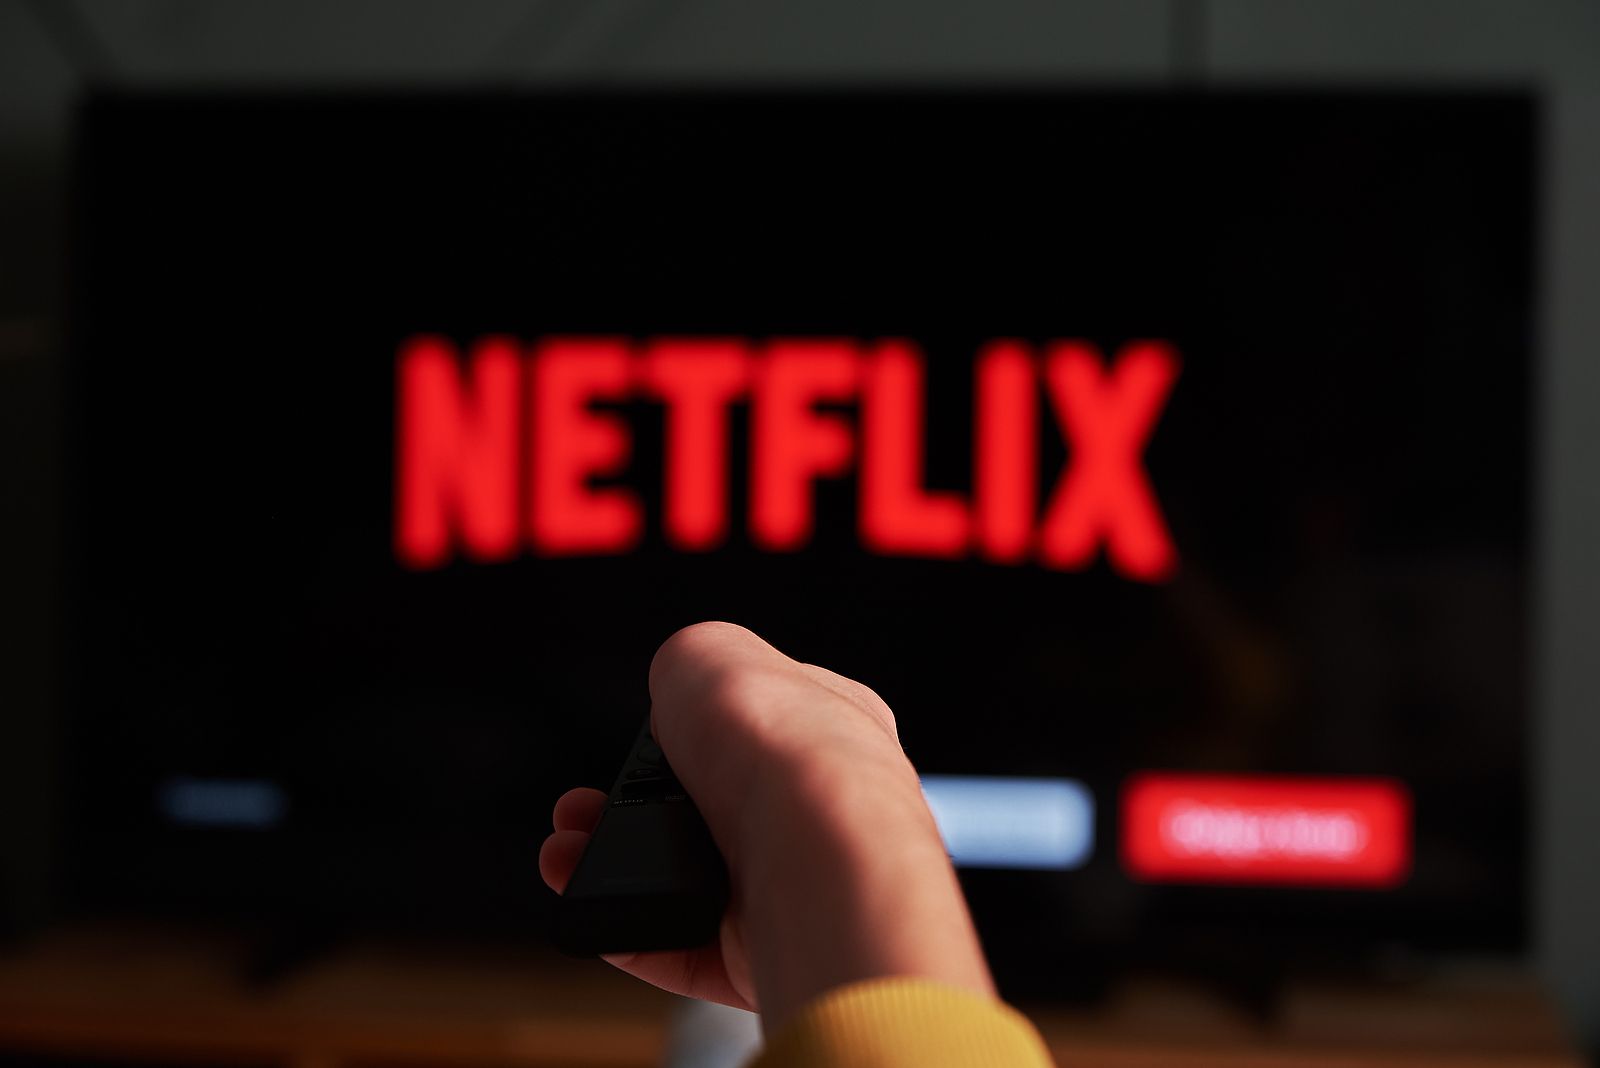 Netflix prepara un plan más barato a cambio de incluir publicidad